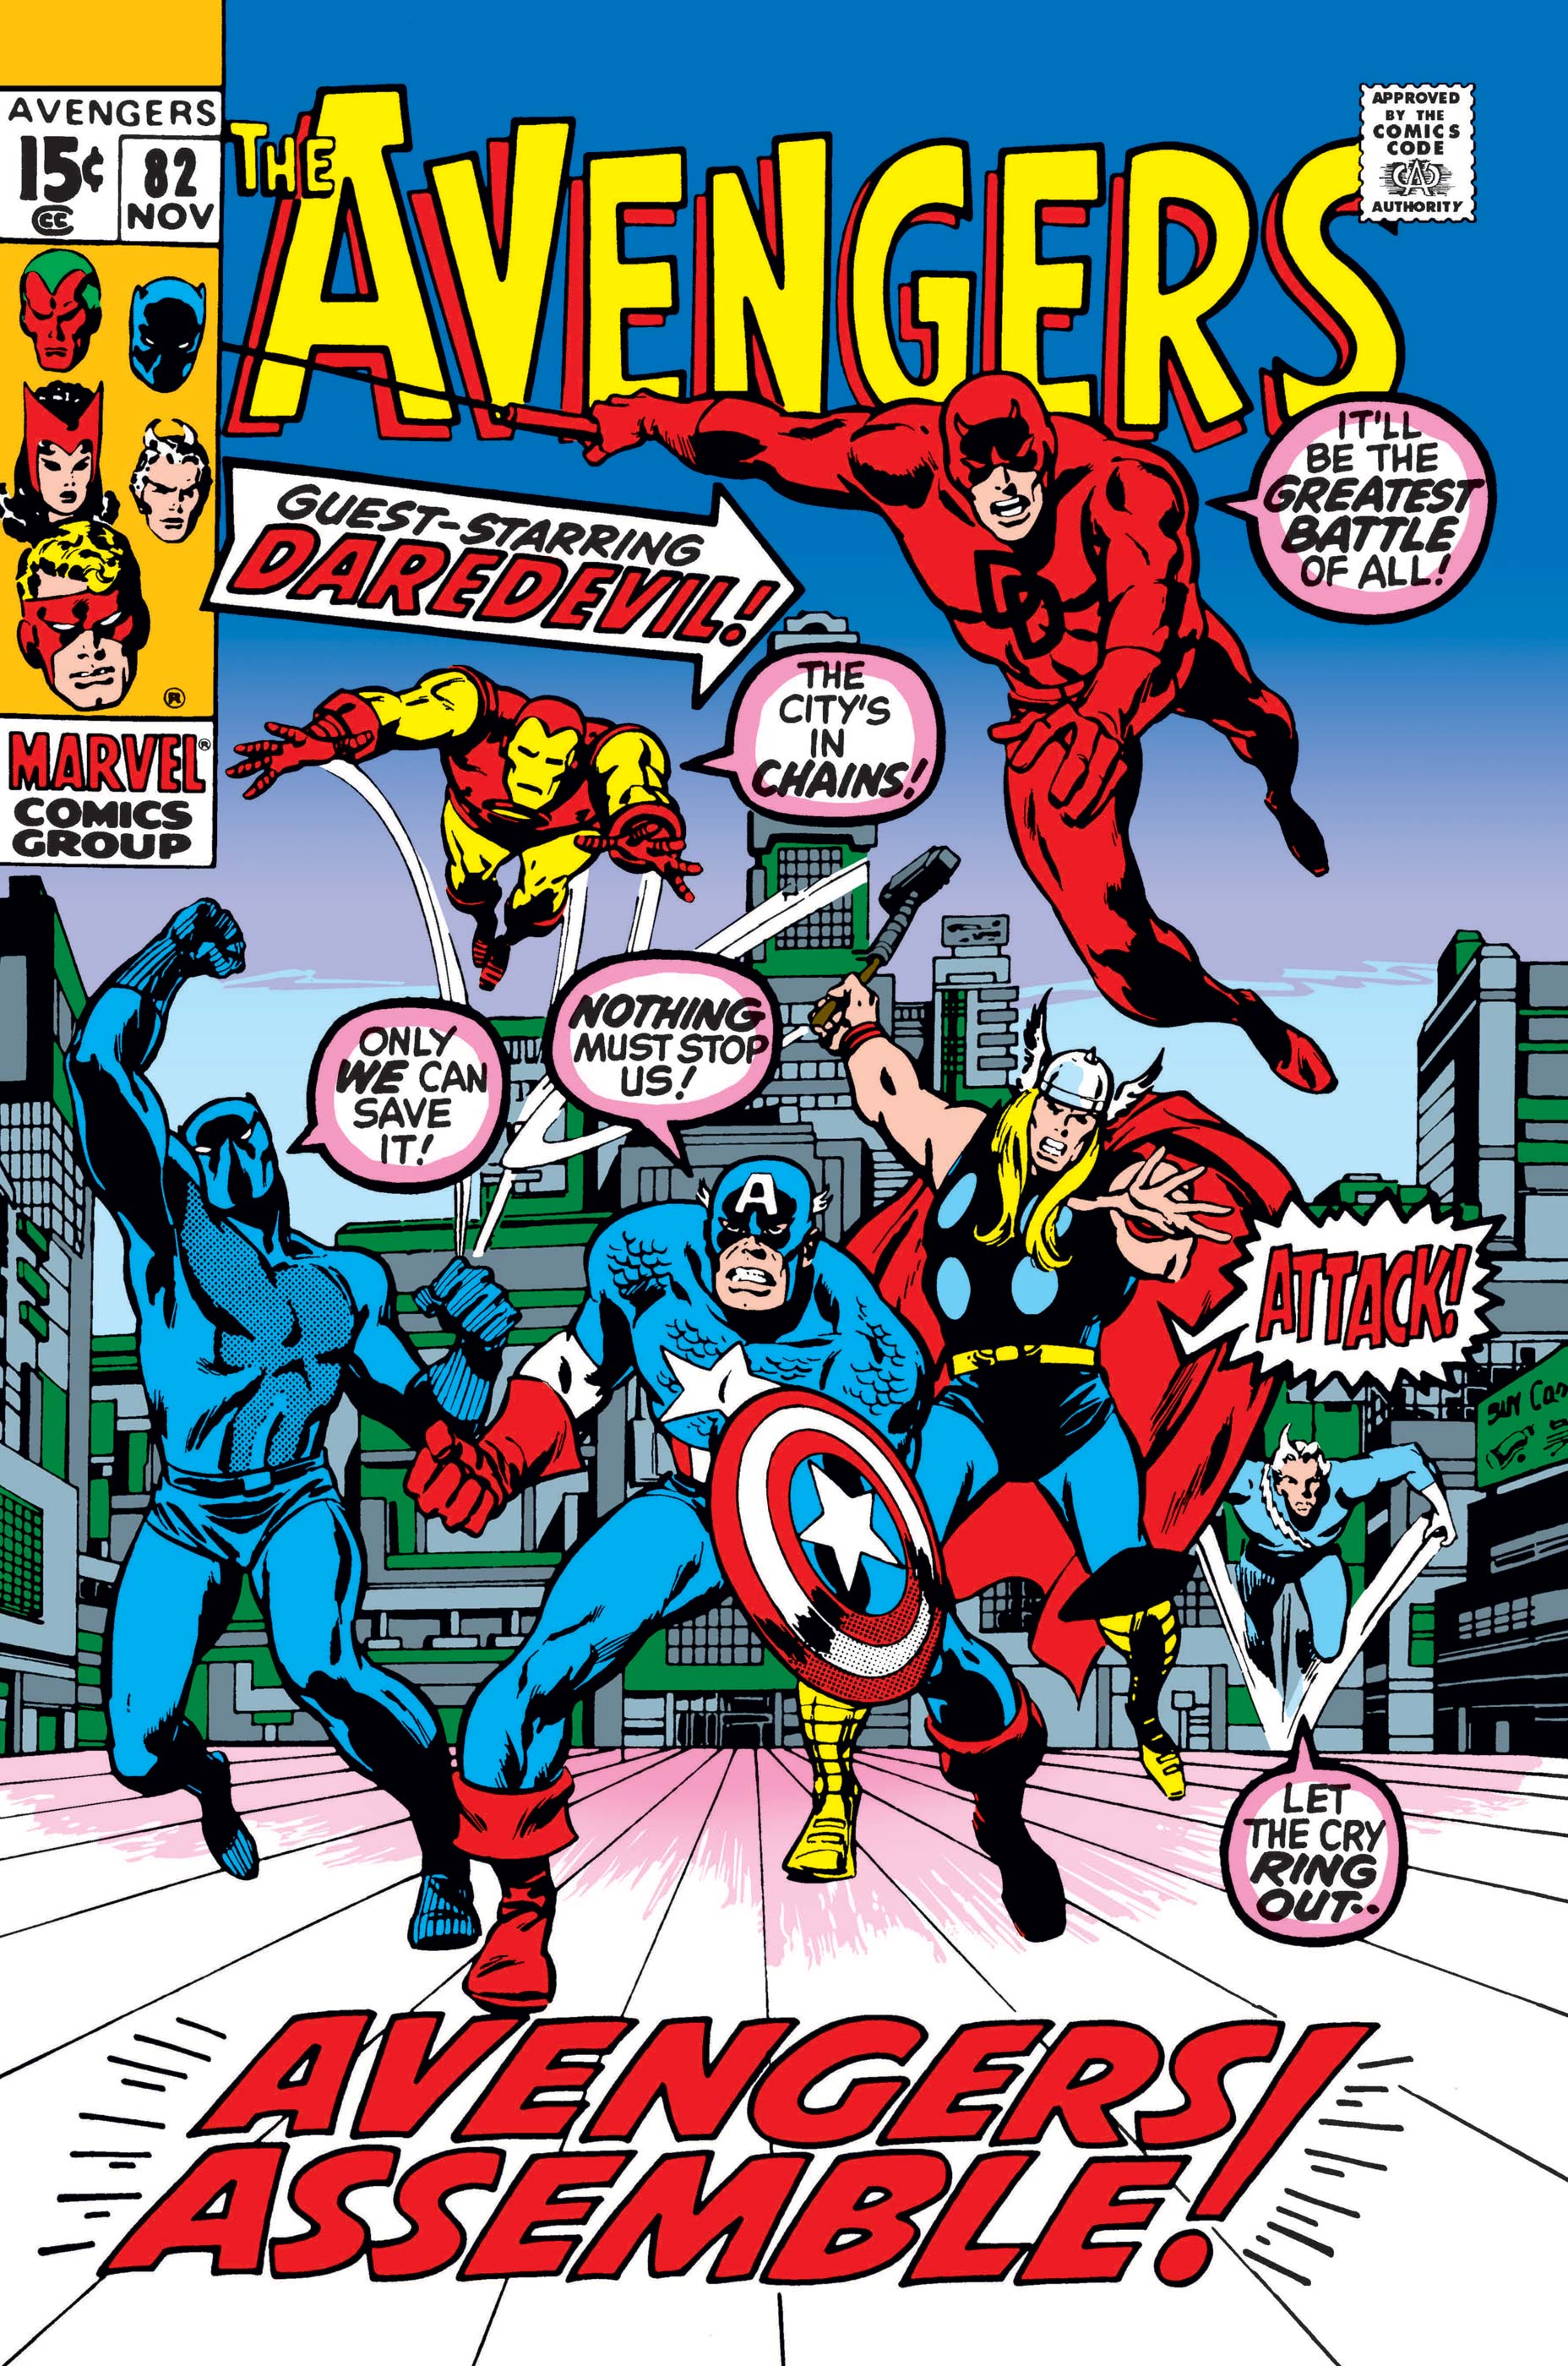 Avengers (1963) #82